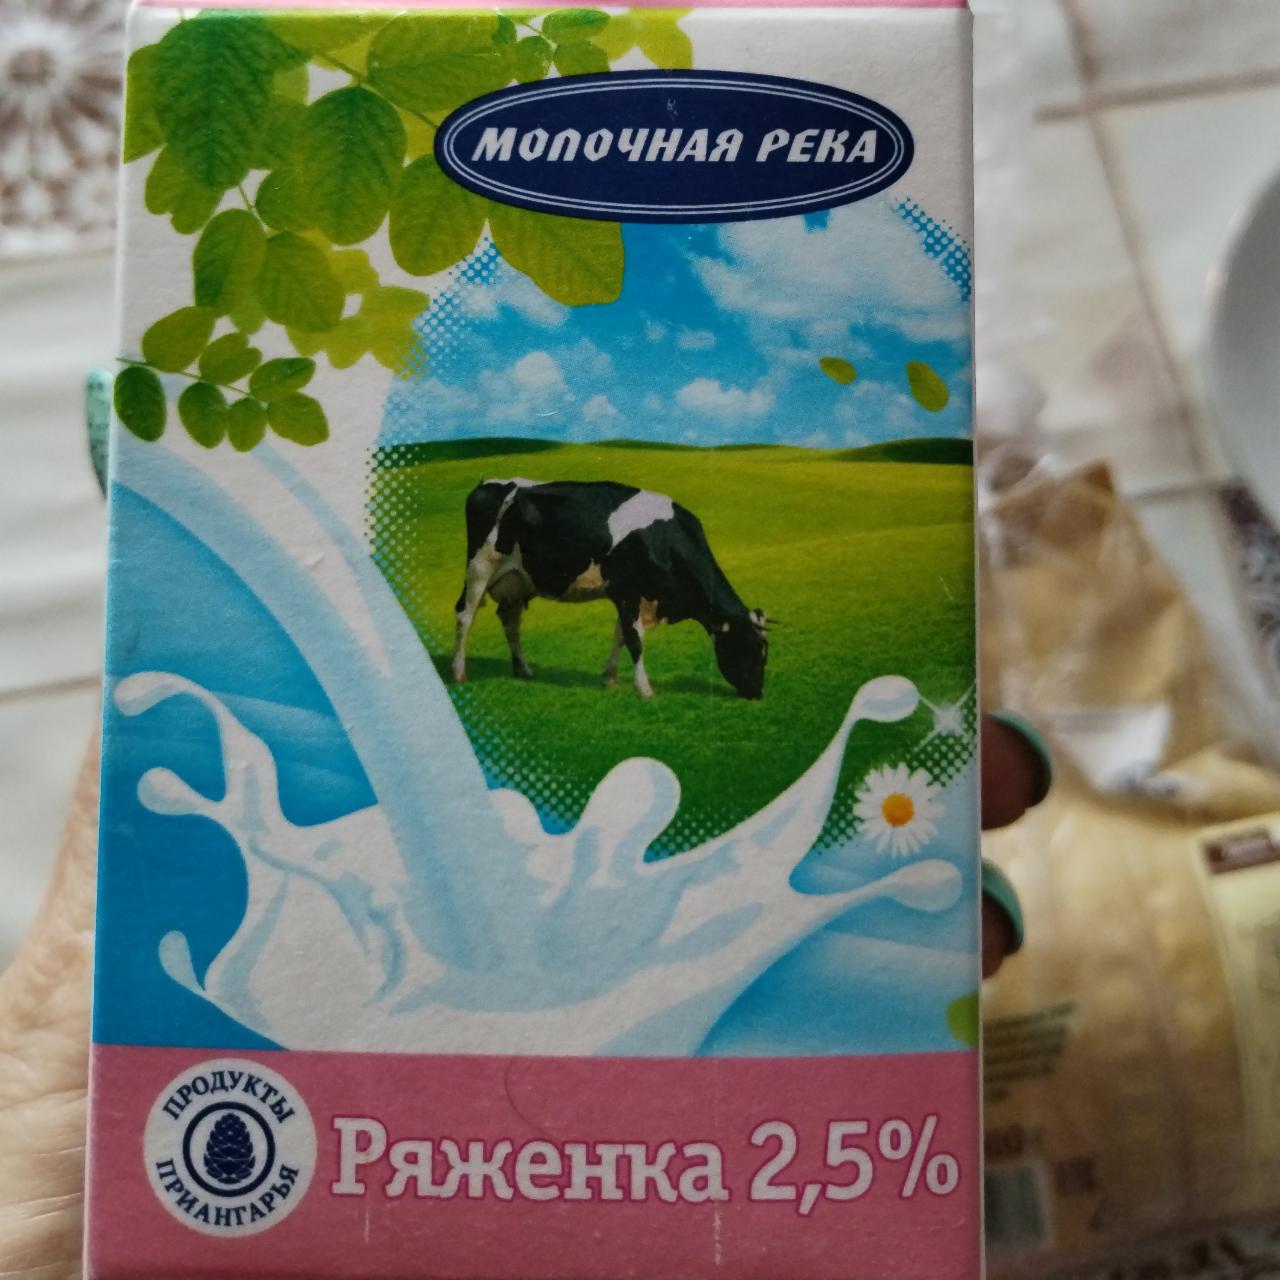 Фото - Ряженка 2.5% Молочная река